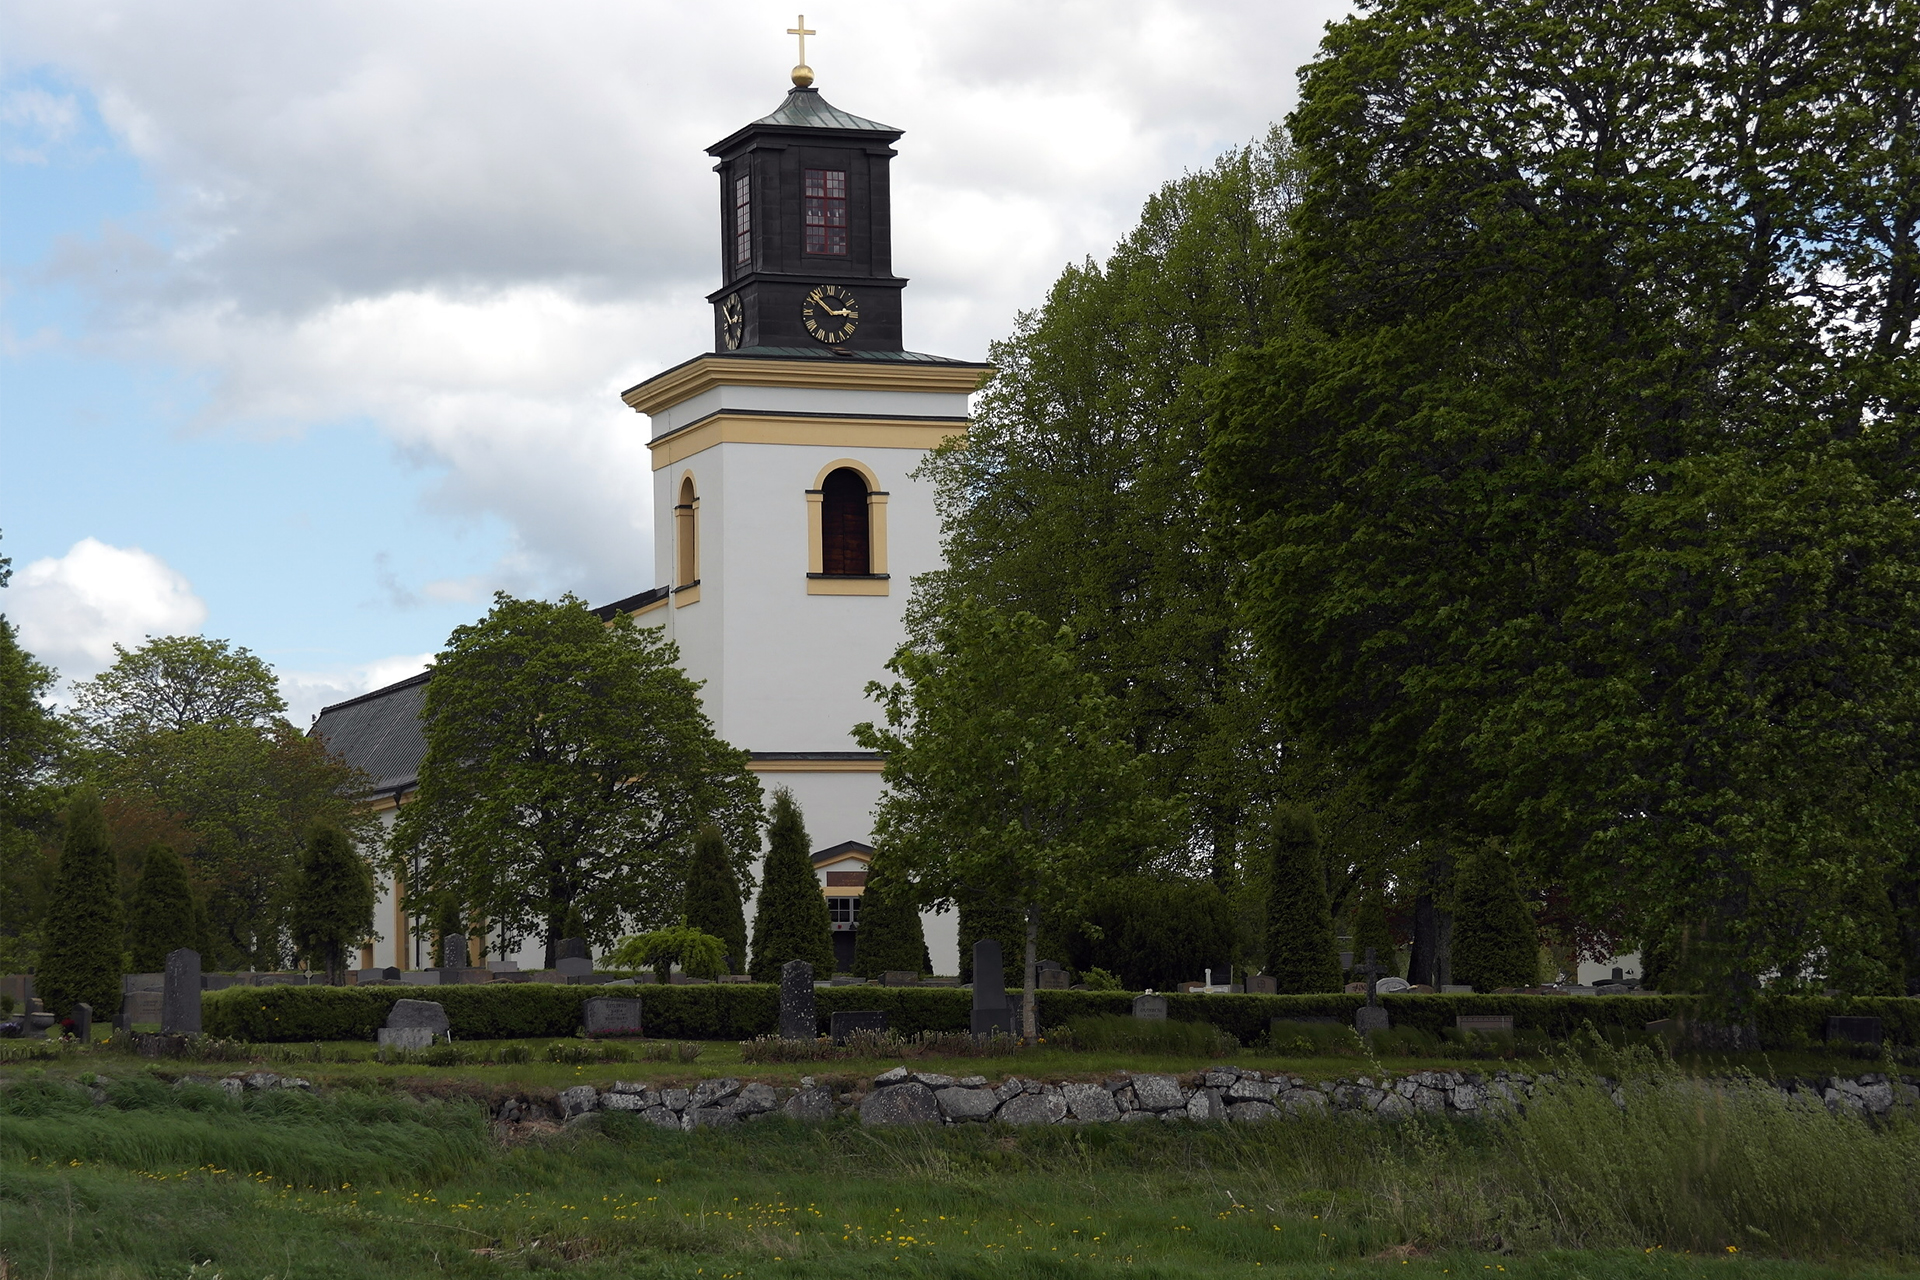 Österfärnebo kyrka